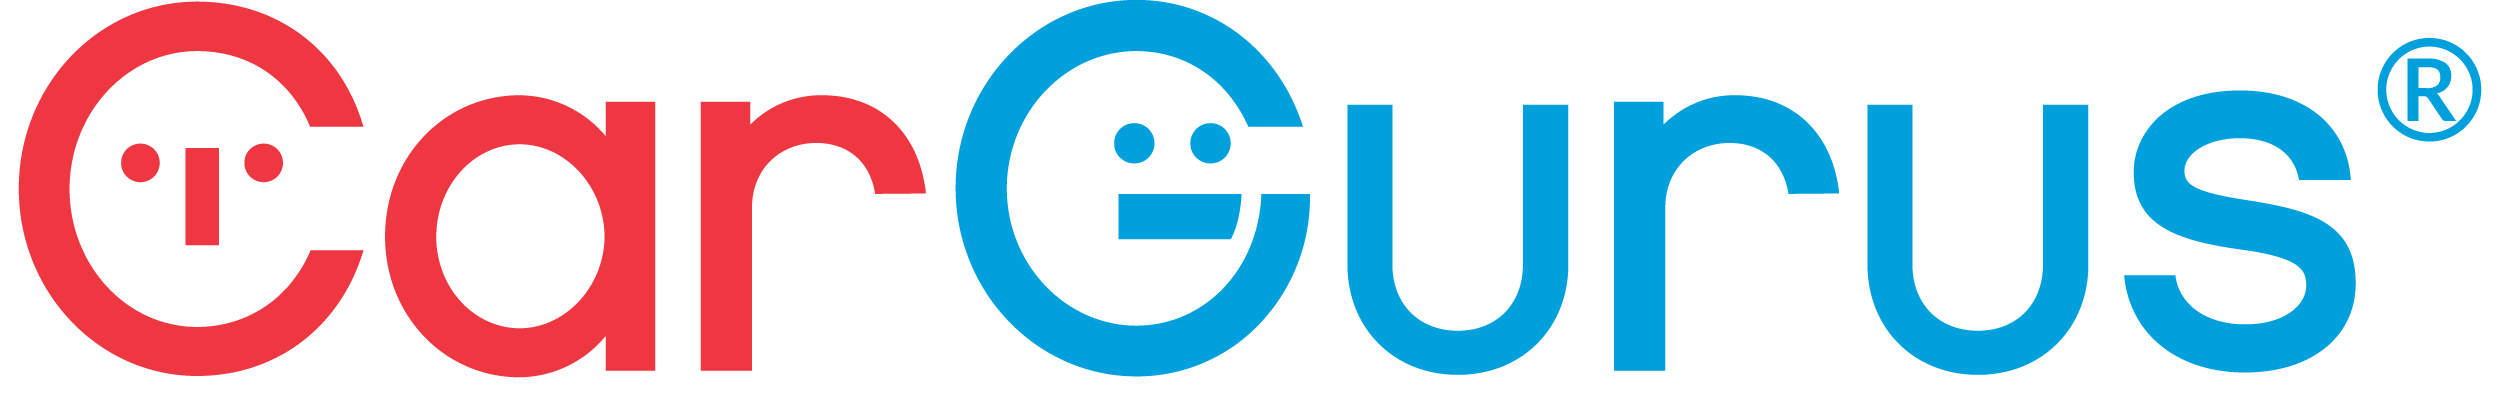 logo-car-gurus-v1.png